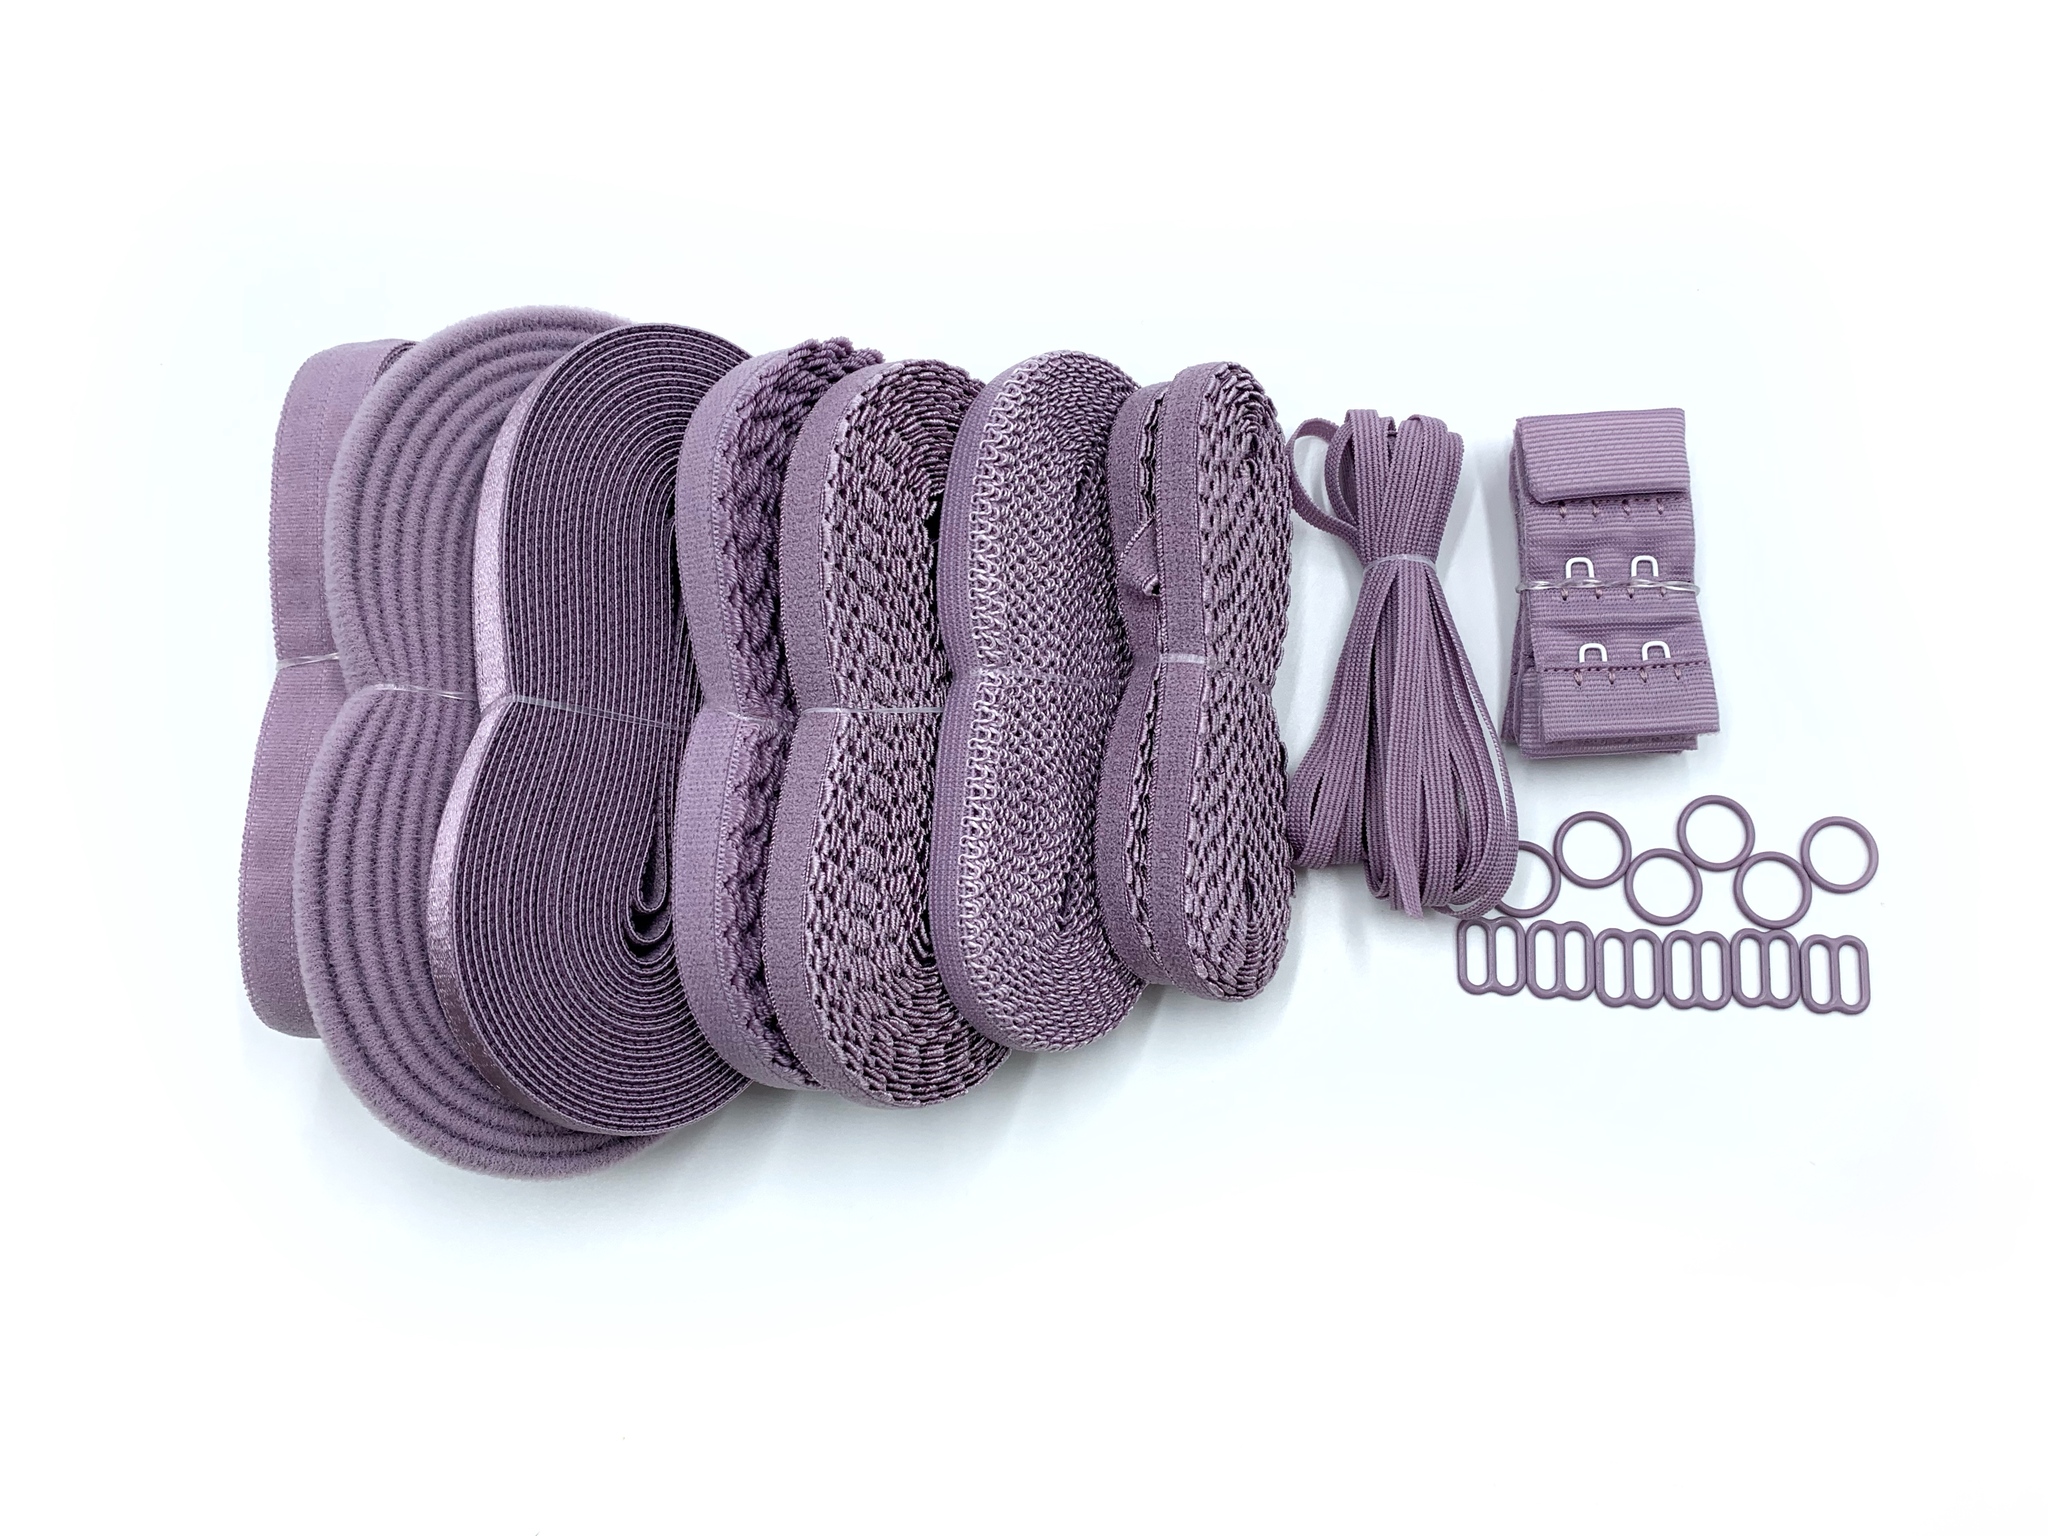 Набор фурнитуры для пошива нижнего белья (лавандово-серый) купить по низкой  цене | интернет-магазин Isetta-shop